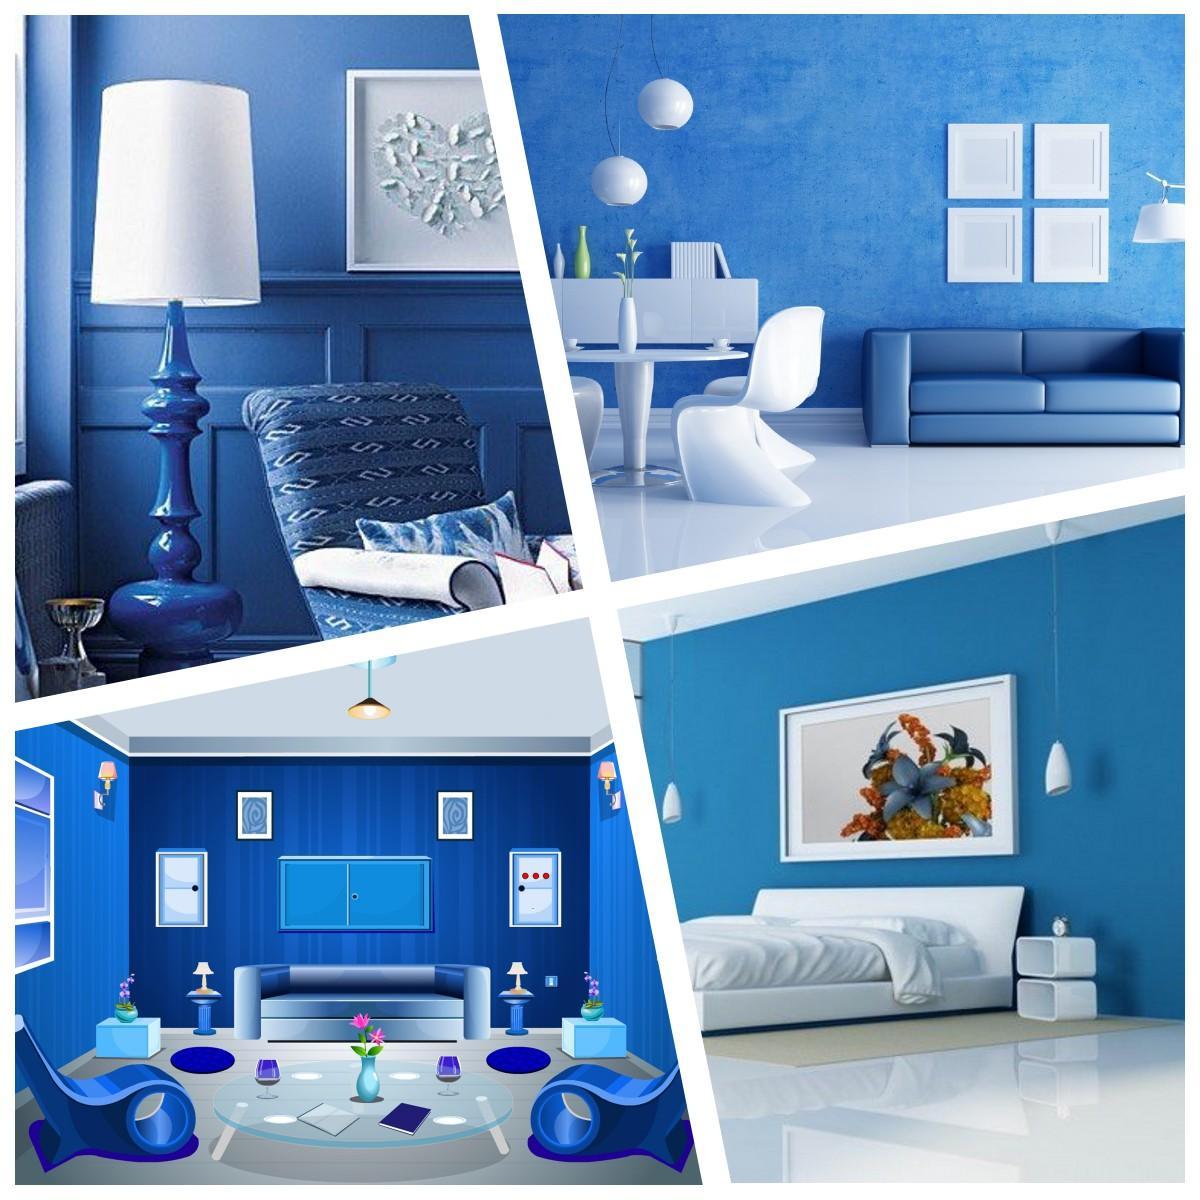 Desain Ruangan Warna Biru For Android Apk Download